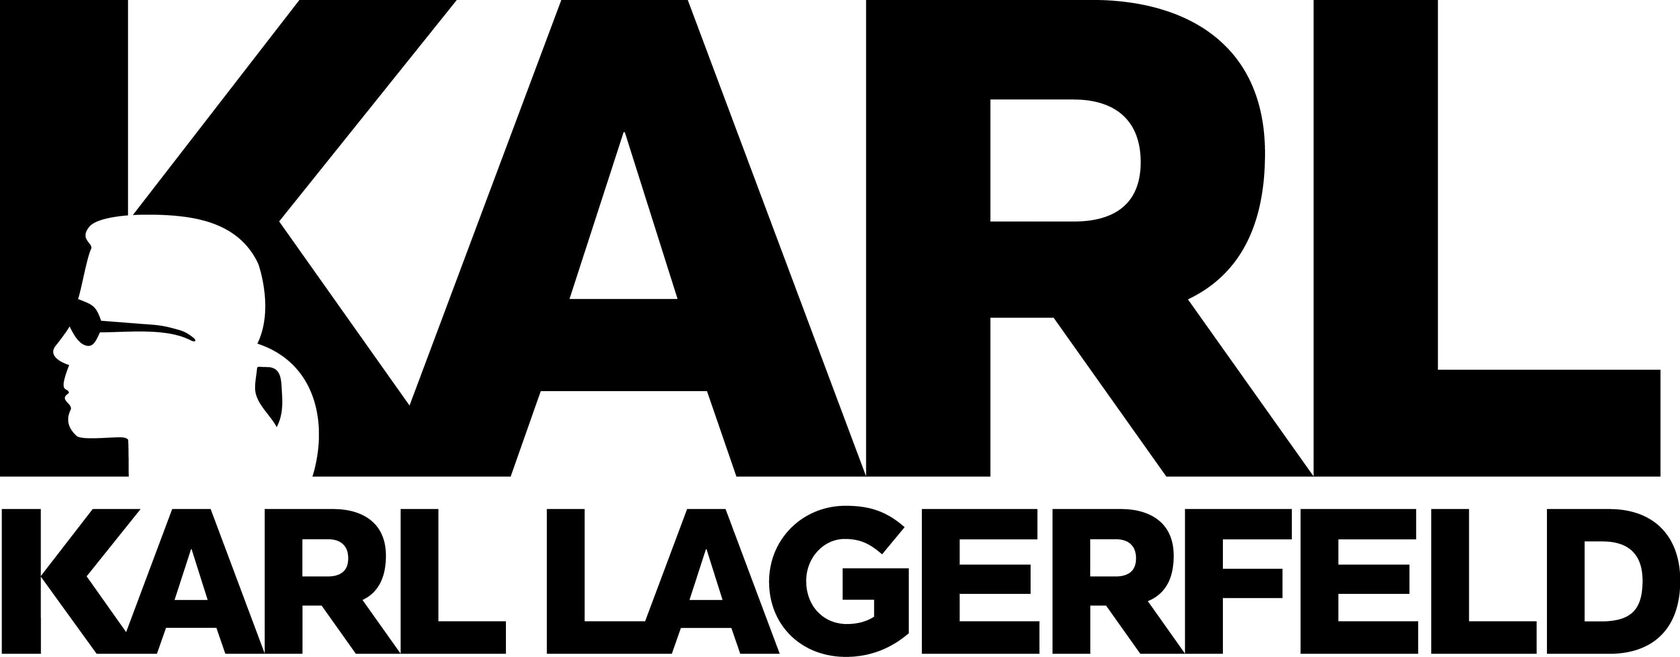 Karl Lagerfeld логотип